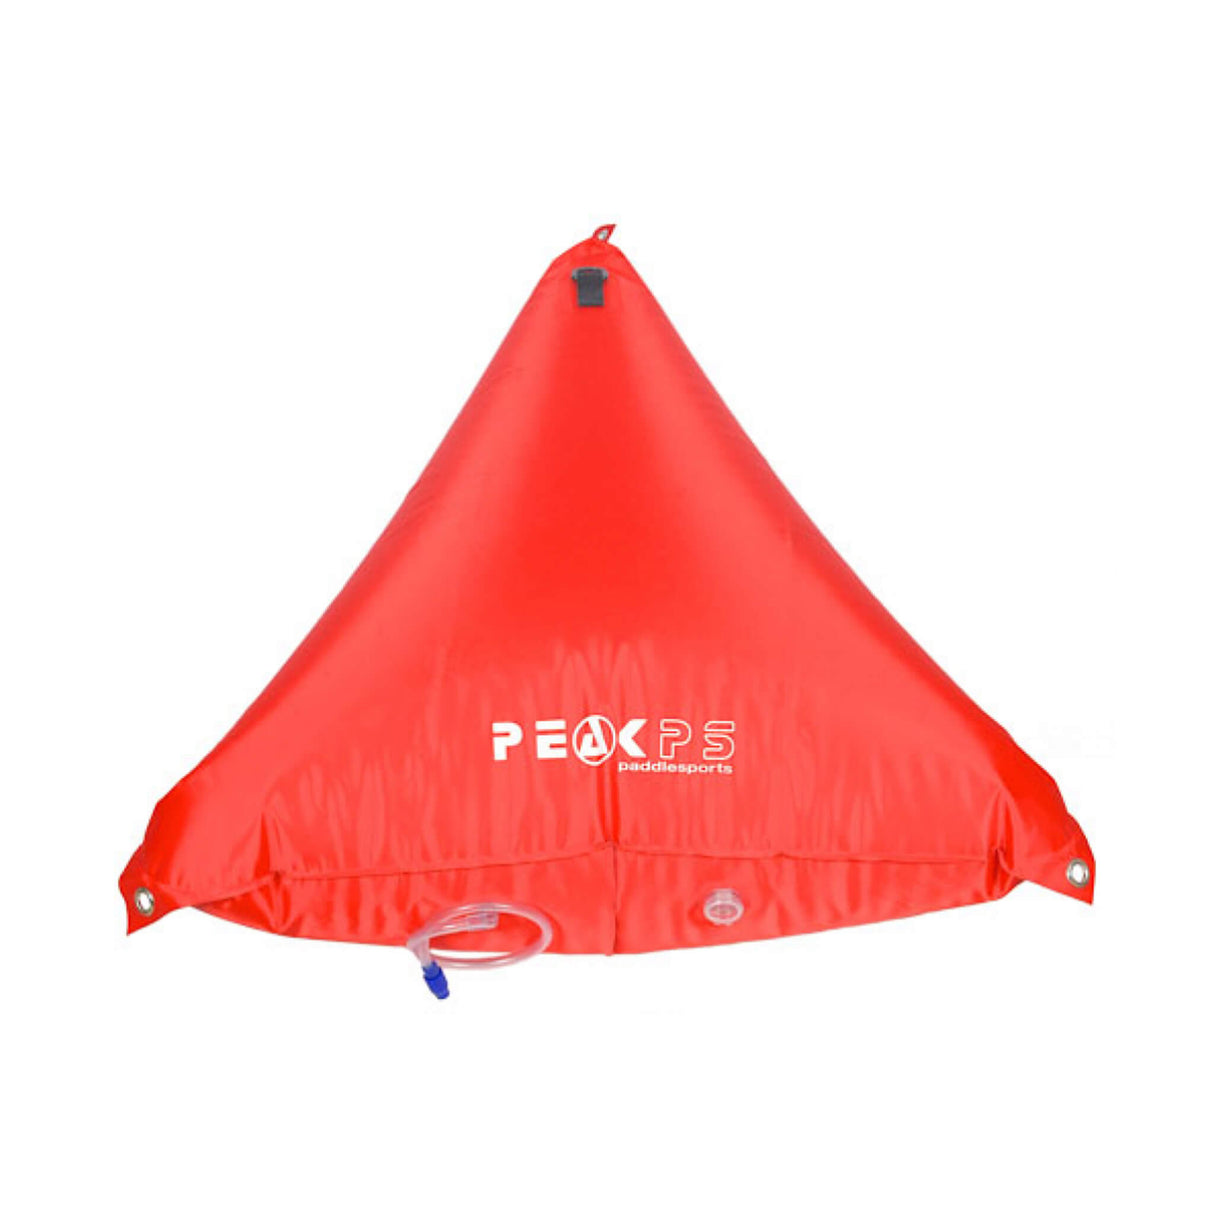 Peak PS 32 Canoe Airbags (Pair)